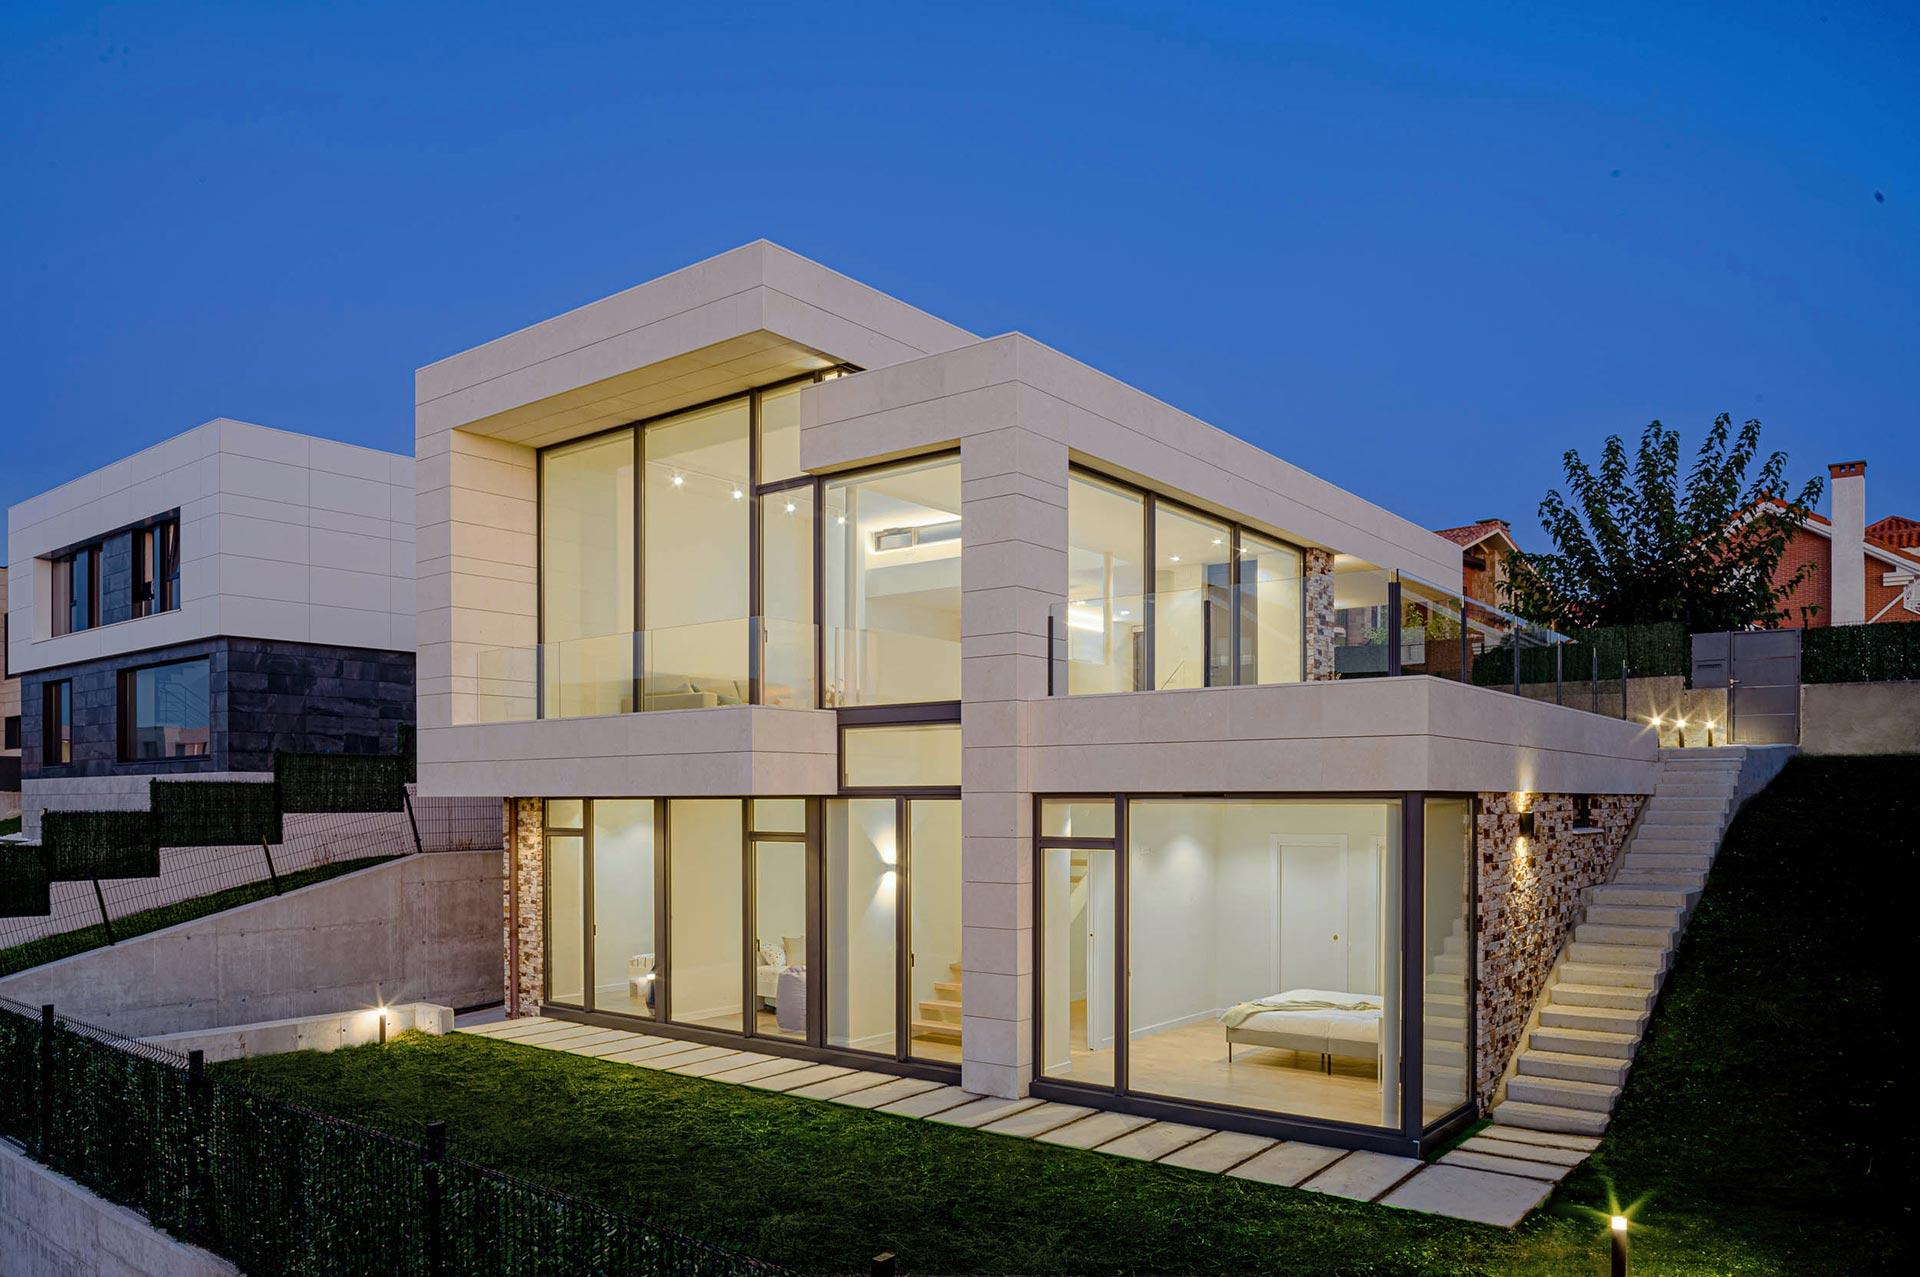 Casa moderna de piedra blanca y grandes cristaleras diseñada por Moah Arquitectos en Liencres. Cantabria